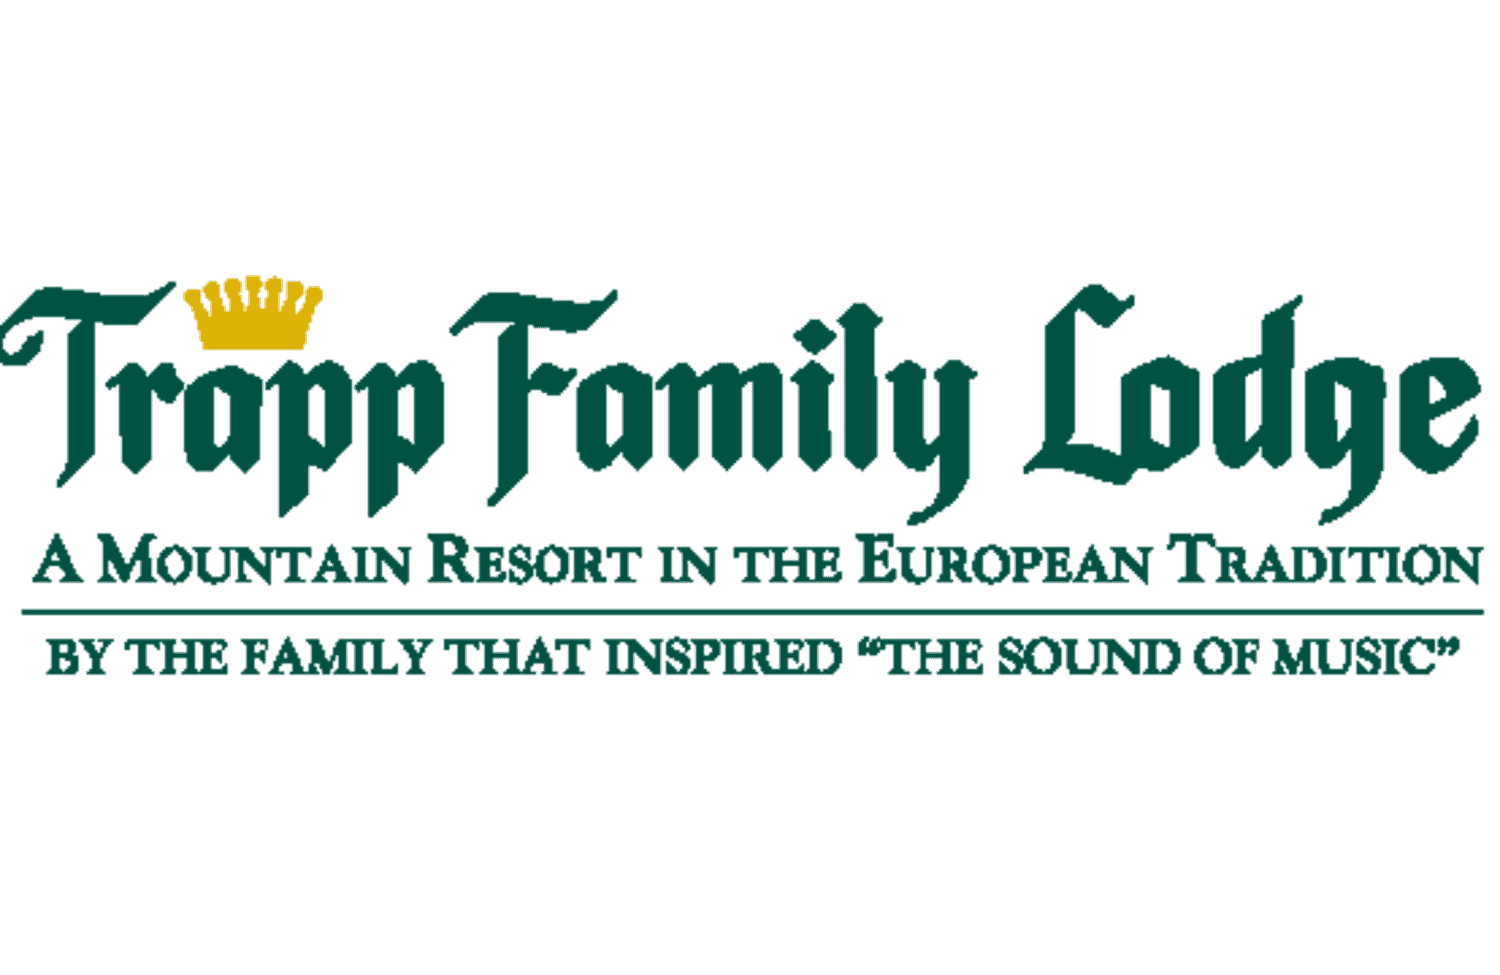 Stowe-WL-TrappFamilyLodge-Logo-FCE-554x360